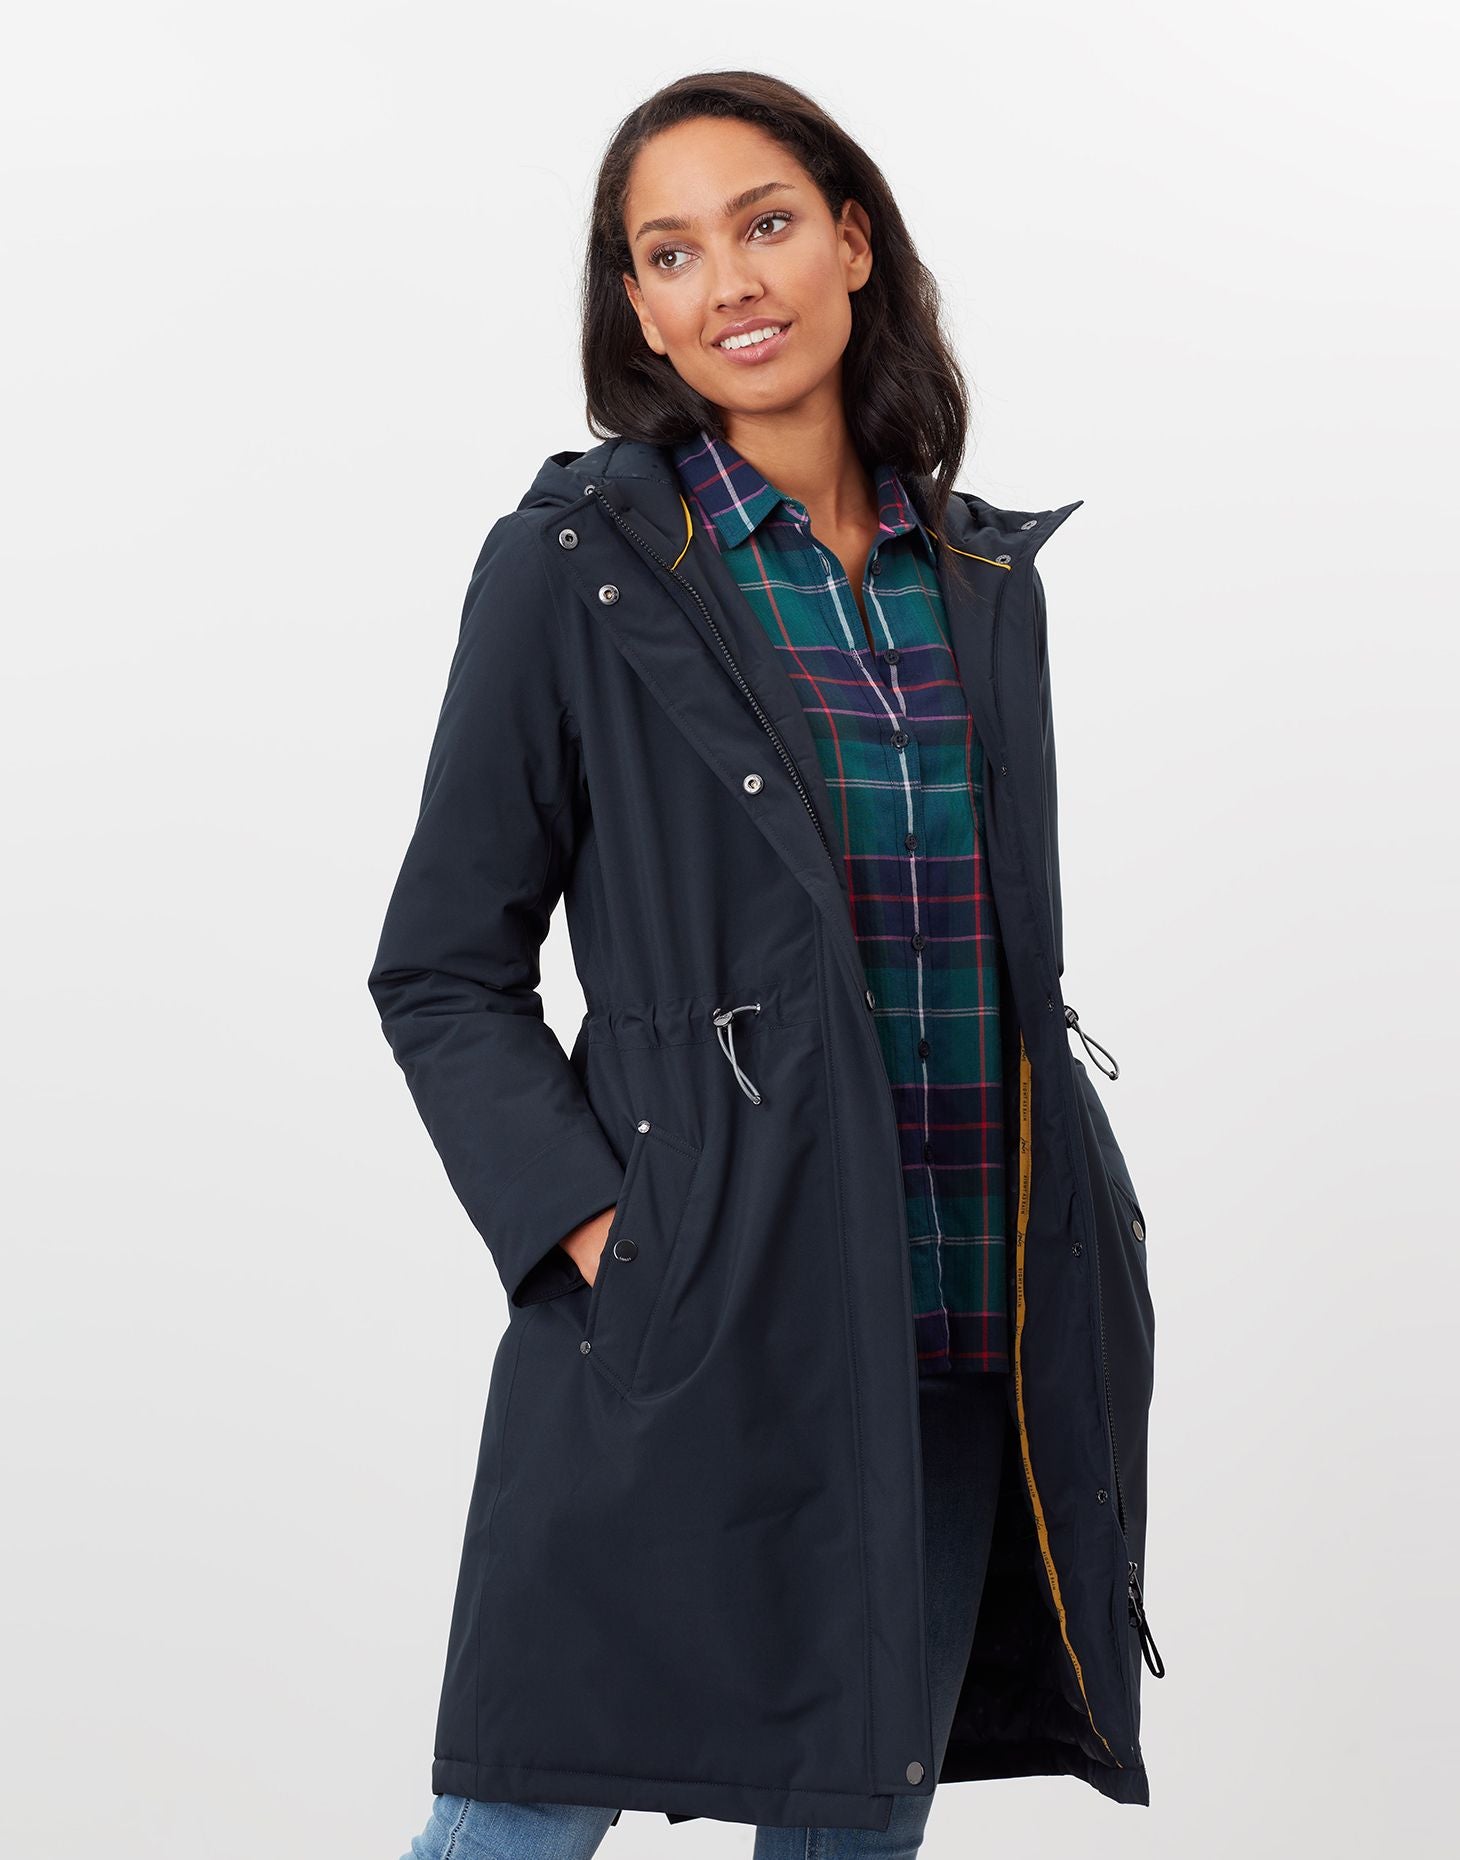 Women's Charlbury Waterproof Raincoat with Padded Lining - Navy